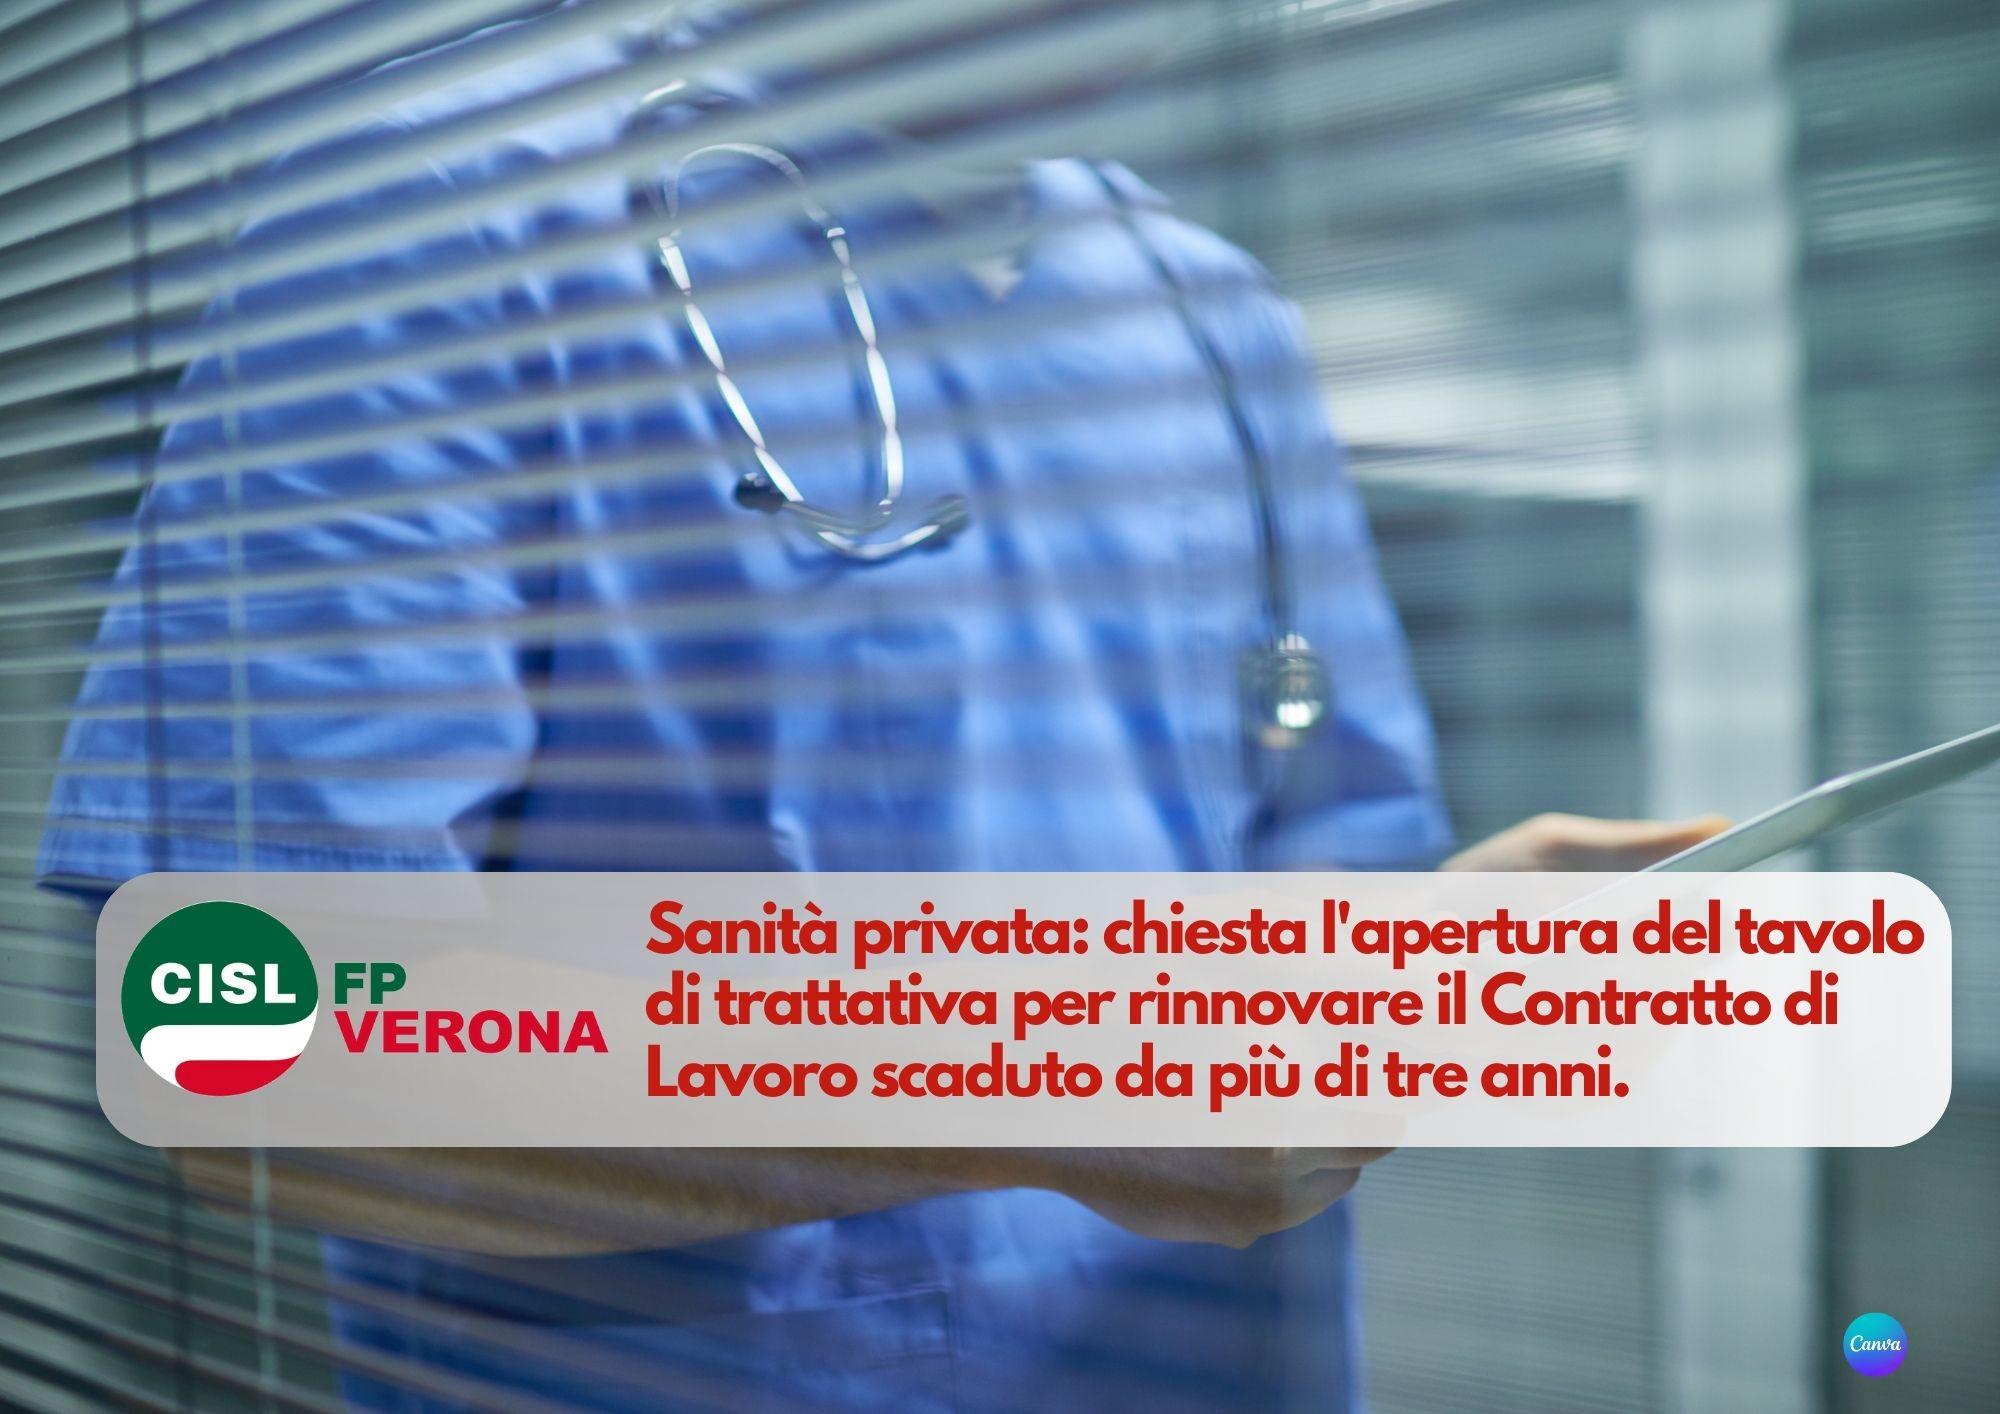 CISL FP Verona. Sanità privata: chiesta l'apertura del tavolo di trattativa per rinnovare il Contratto